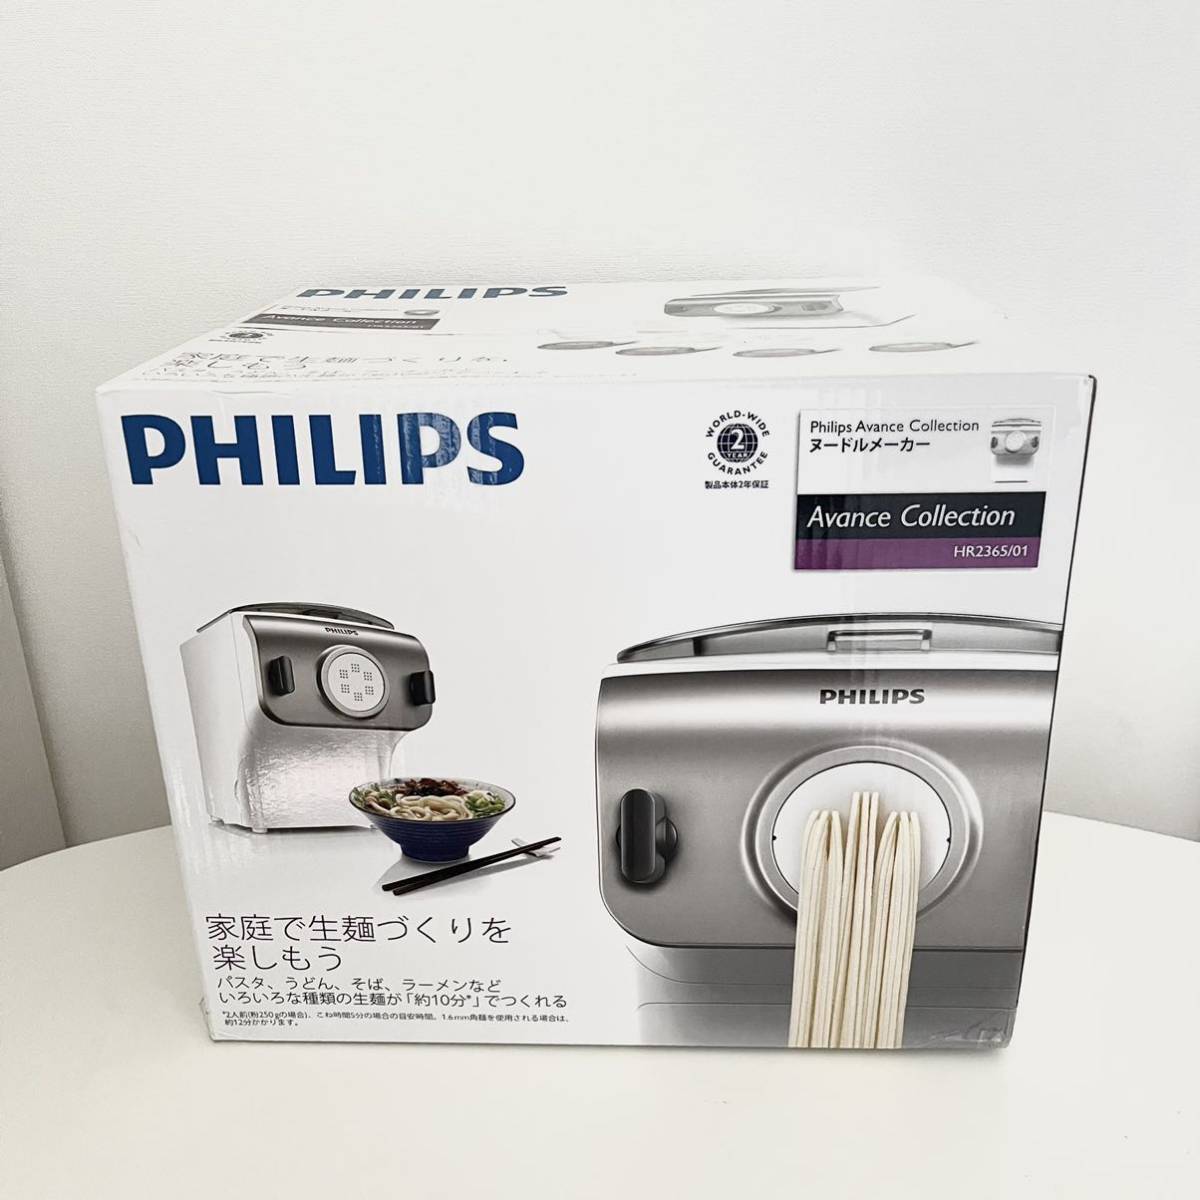 超歓迎 フィリップス PHILIPS 製麺機 ヌードルメーカー HR2365/01